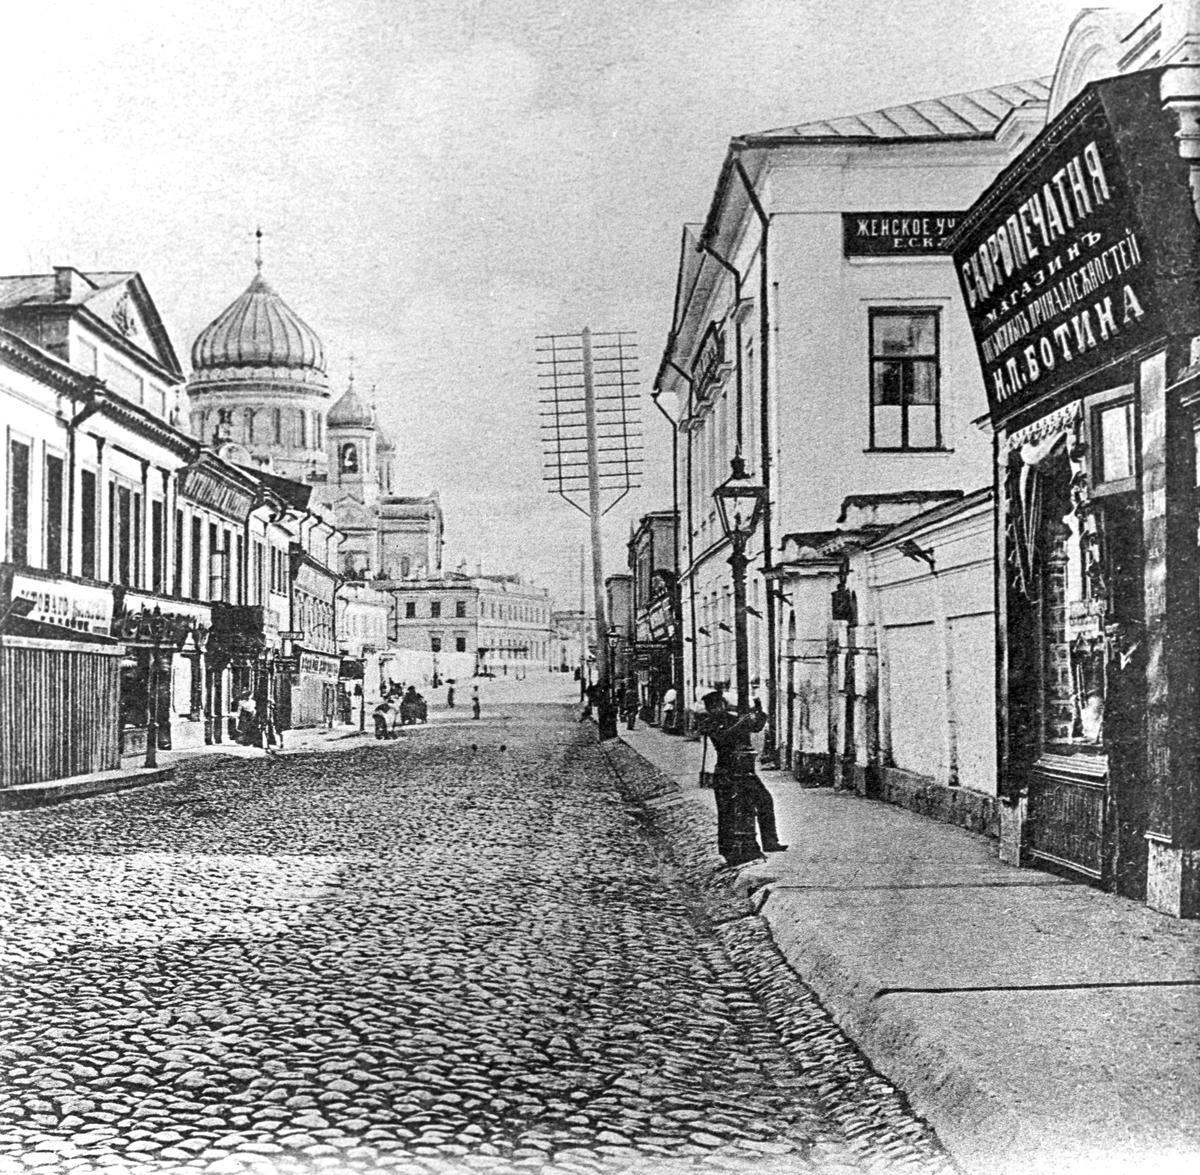 Репродукция открытки начала XX века с изображением улицы Волхонки. Фото: РИА Новости